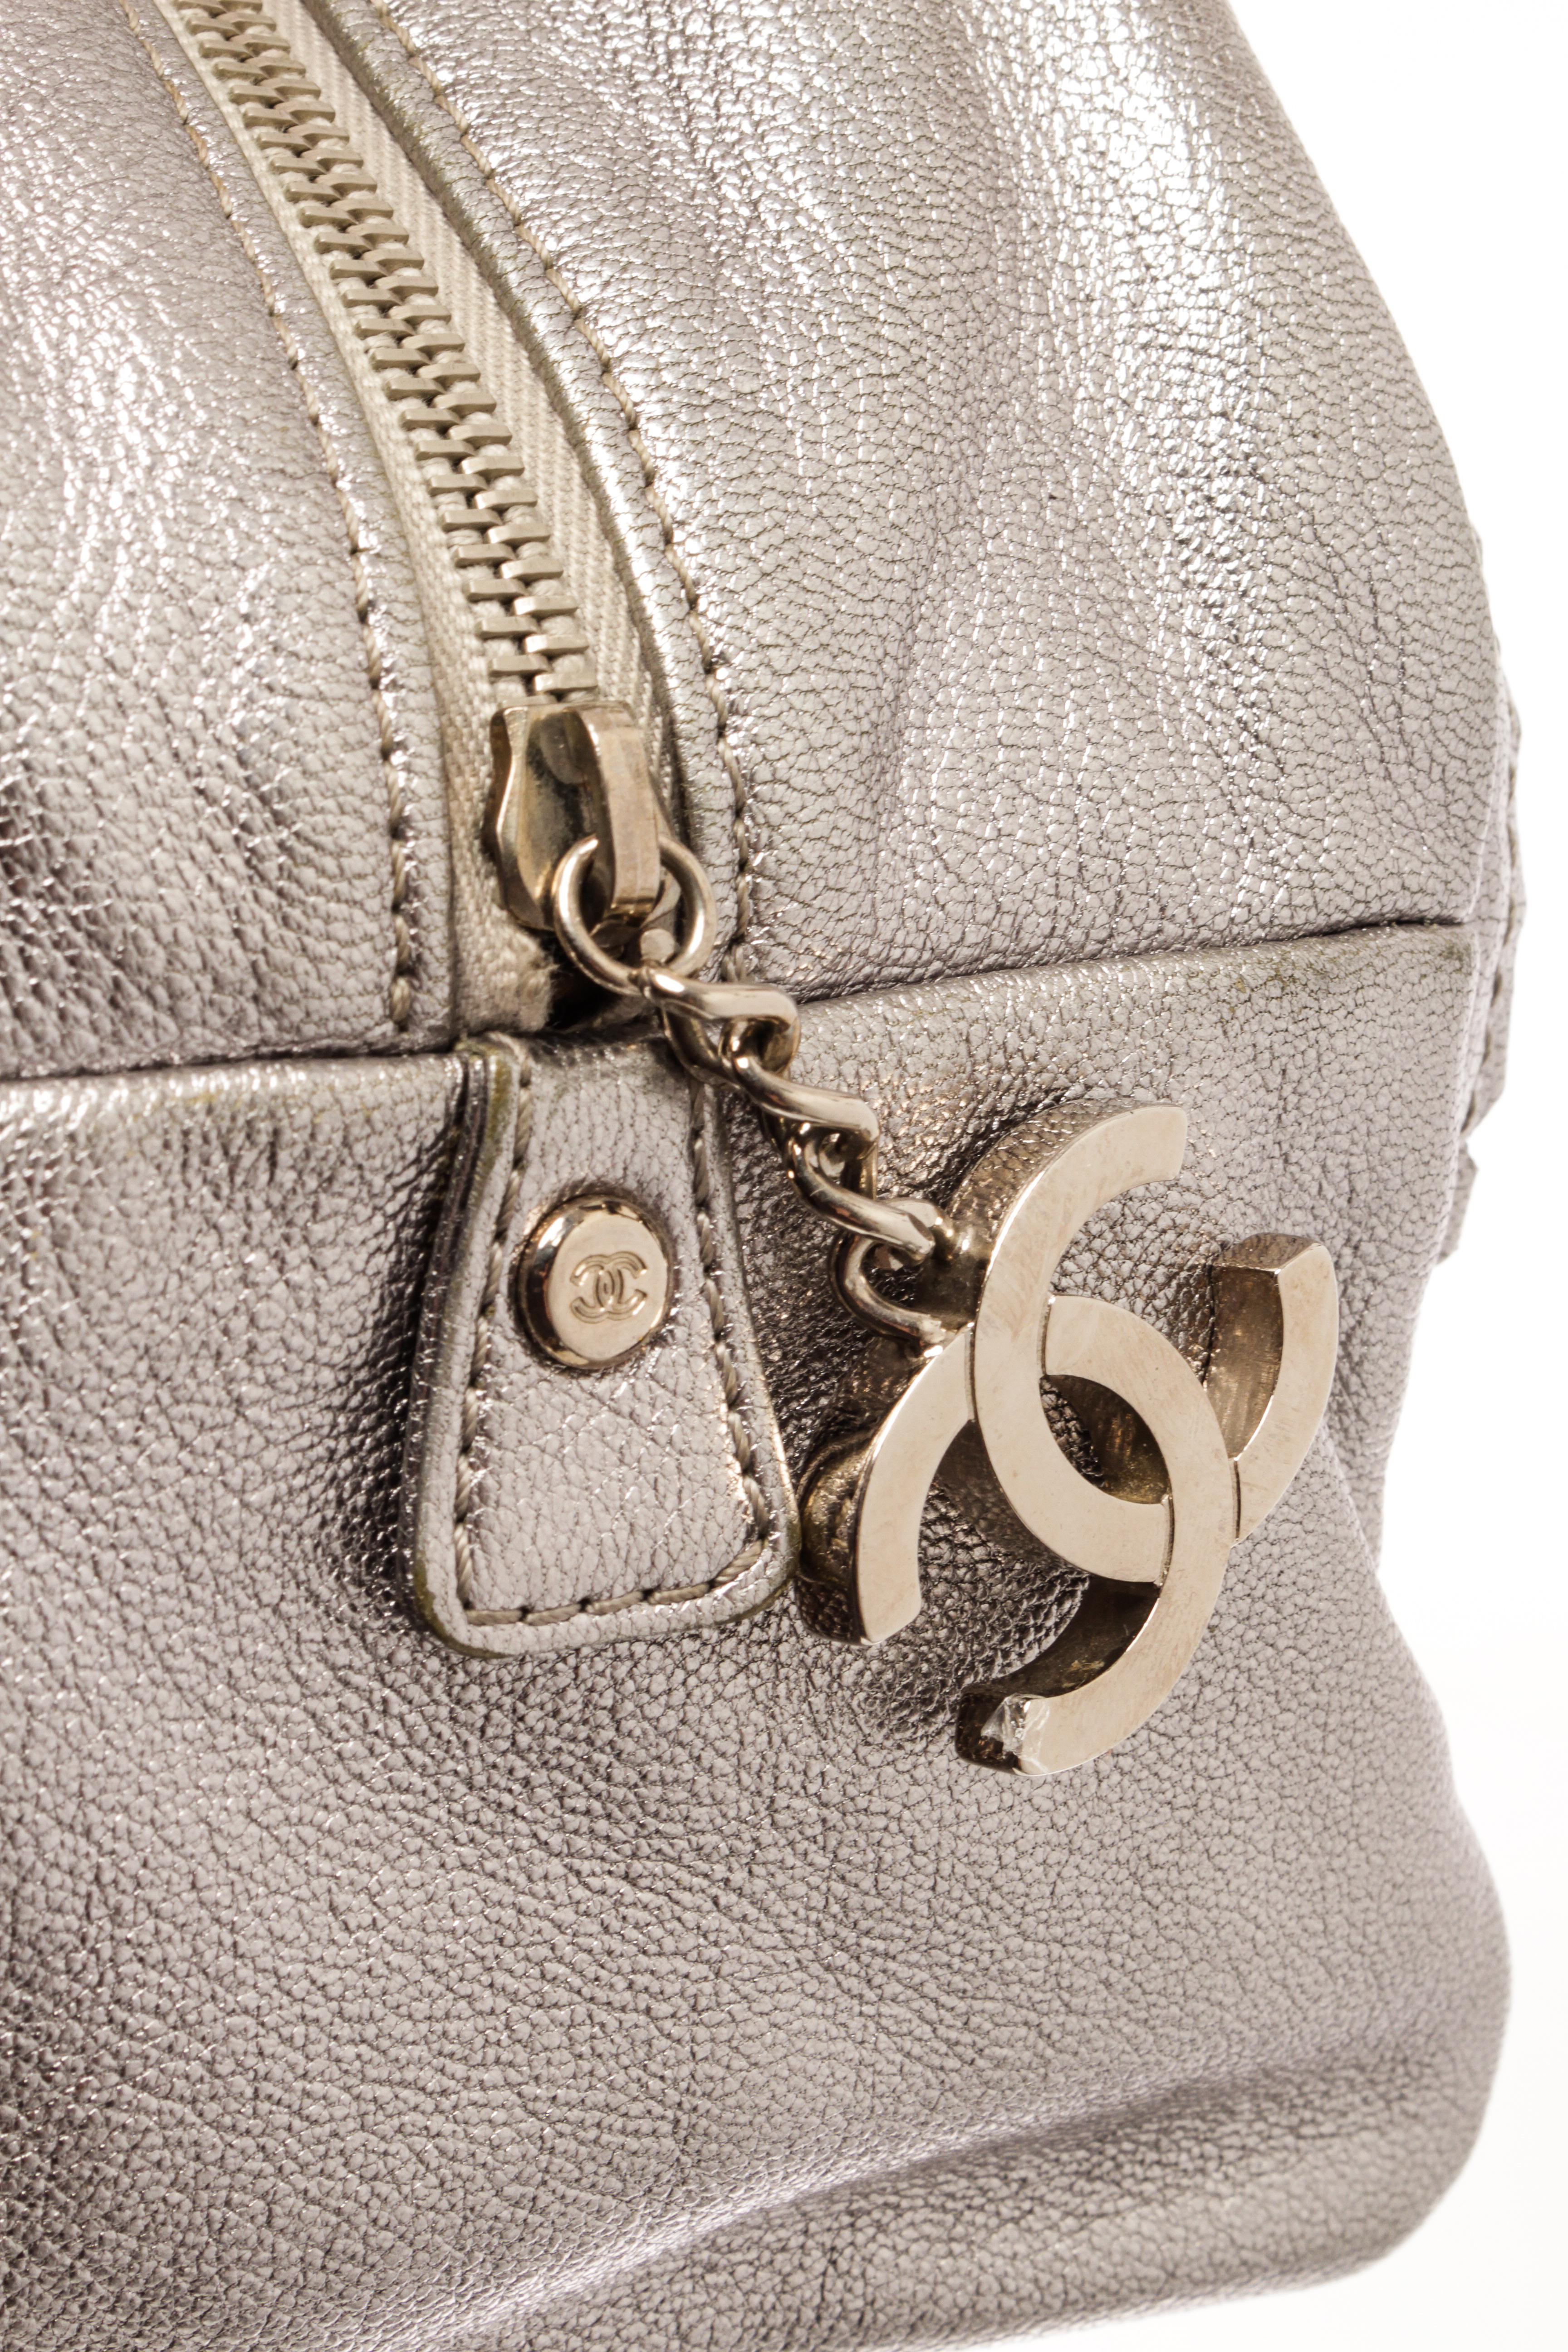 Chanel Silver Leather Doctor Shoulder Bag 2